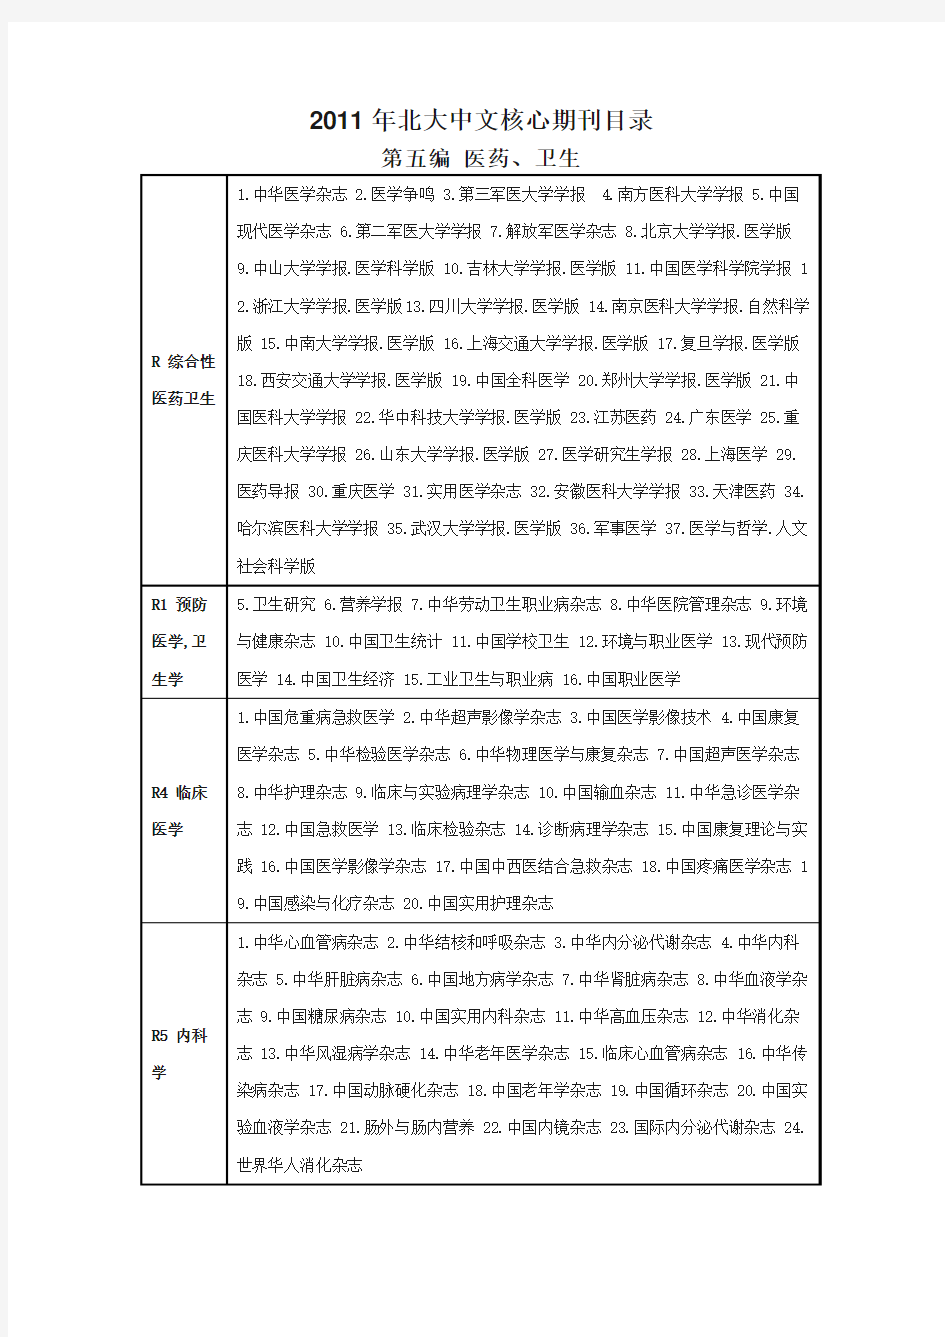 北大中文核心期刊目录(2011年版)